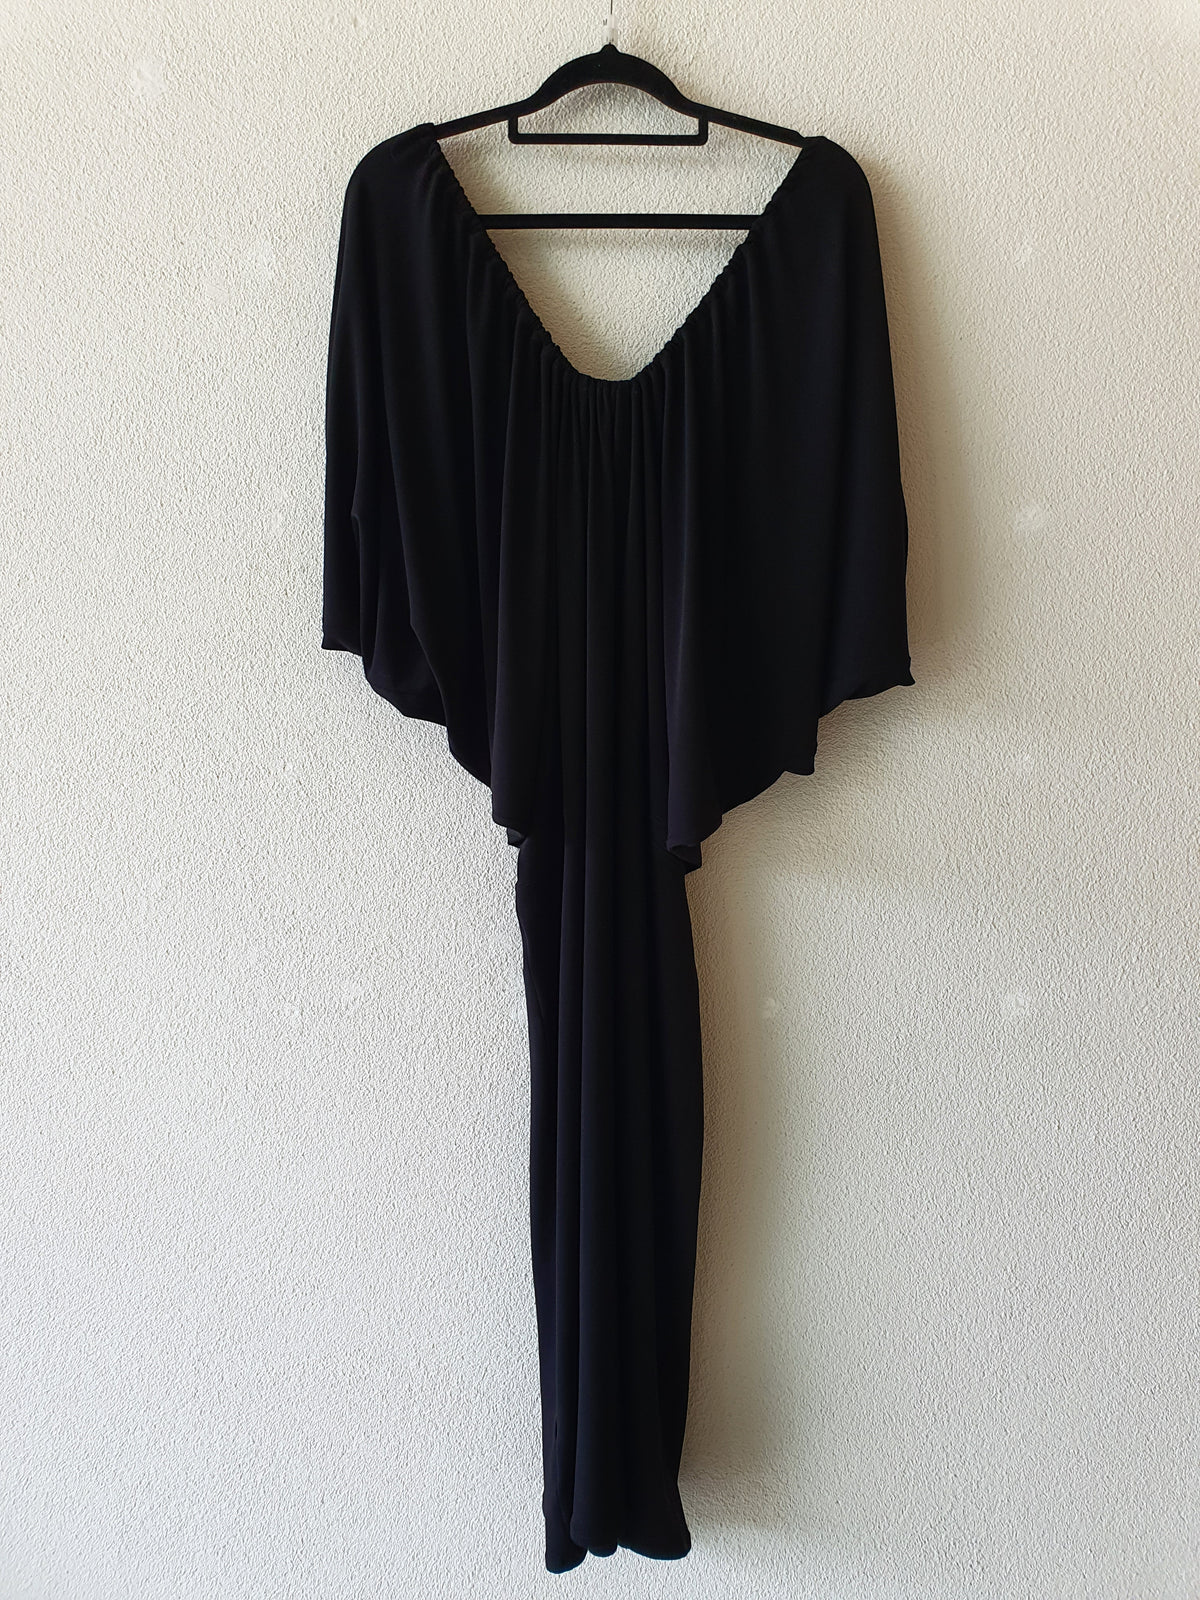 TK Store Black Knit Dress S/M